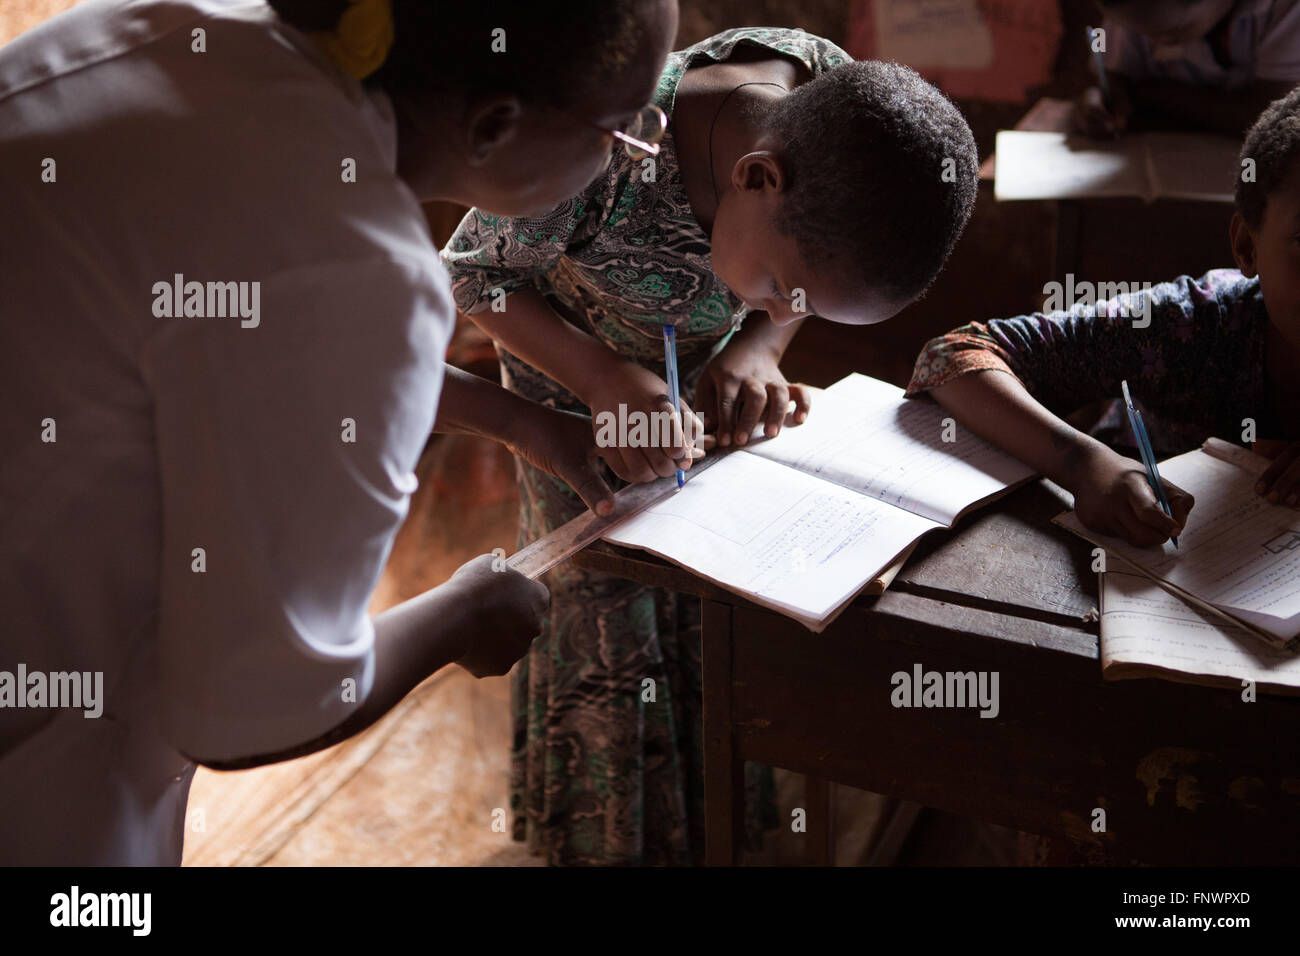 Un insegnante aiuta un alunno con la sua matematica in una scuola, Finote Selam, Etiopia, Africa Foto Stock